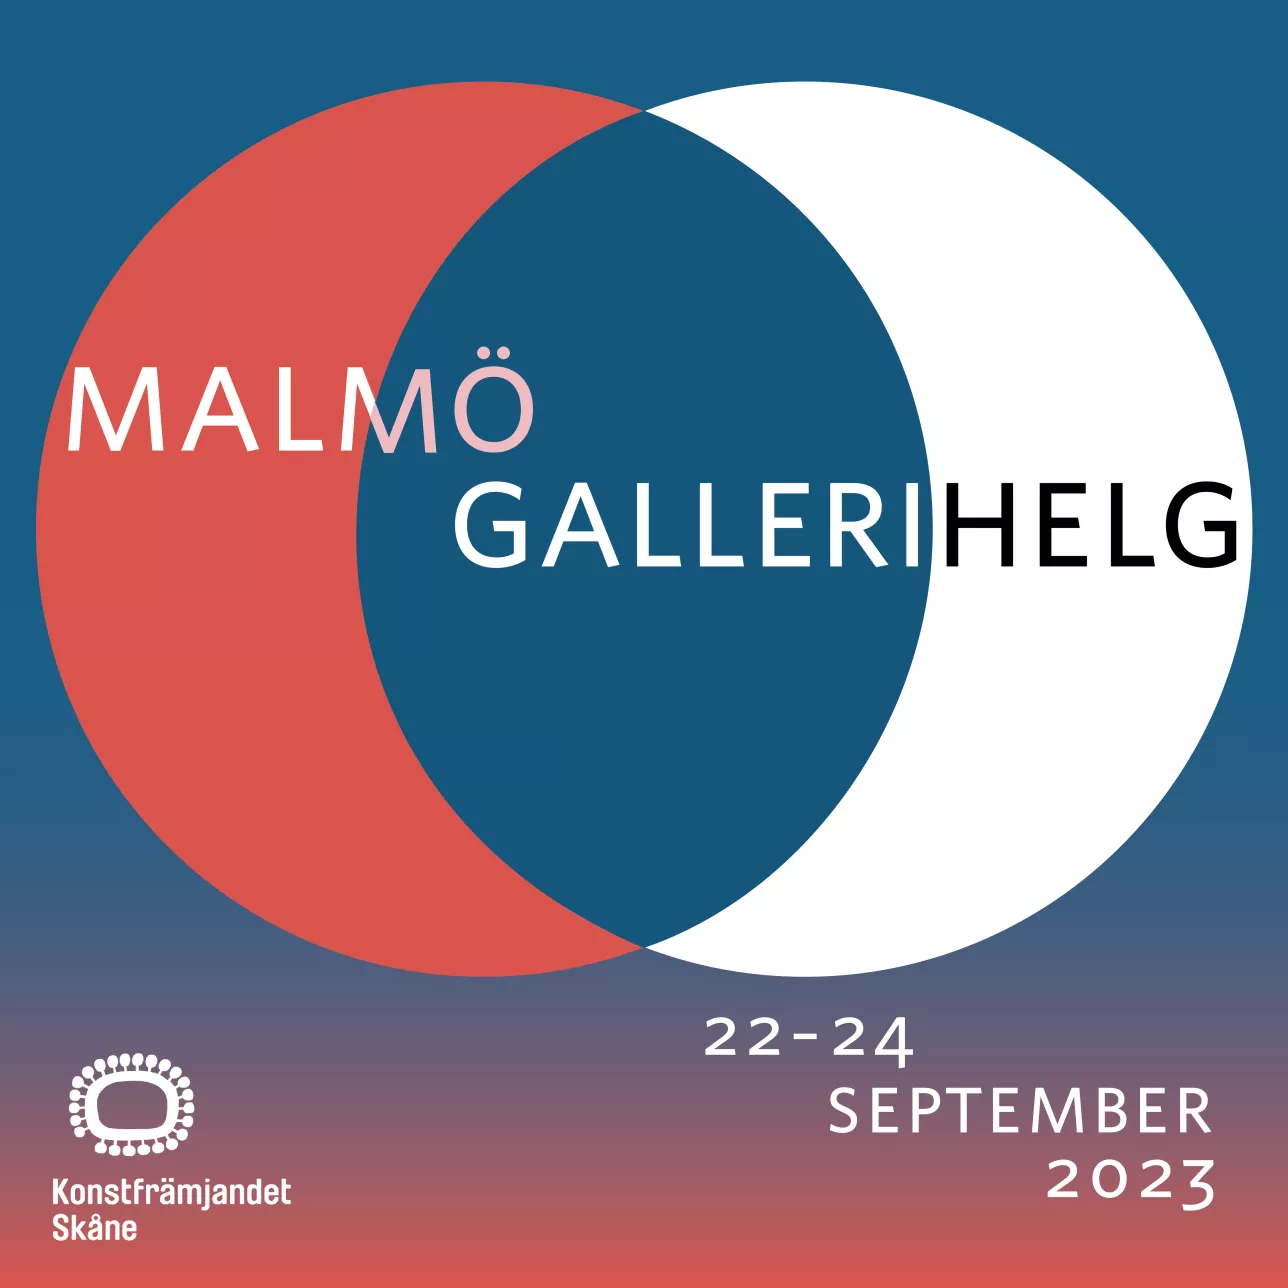 Malmö Gallerihelg. Illustration.